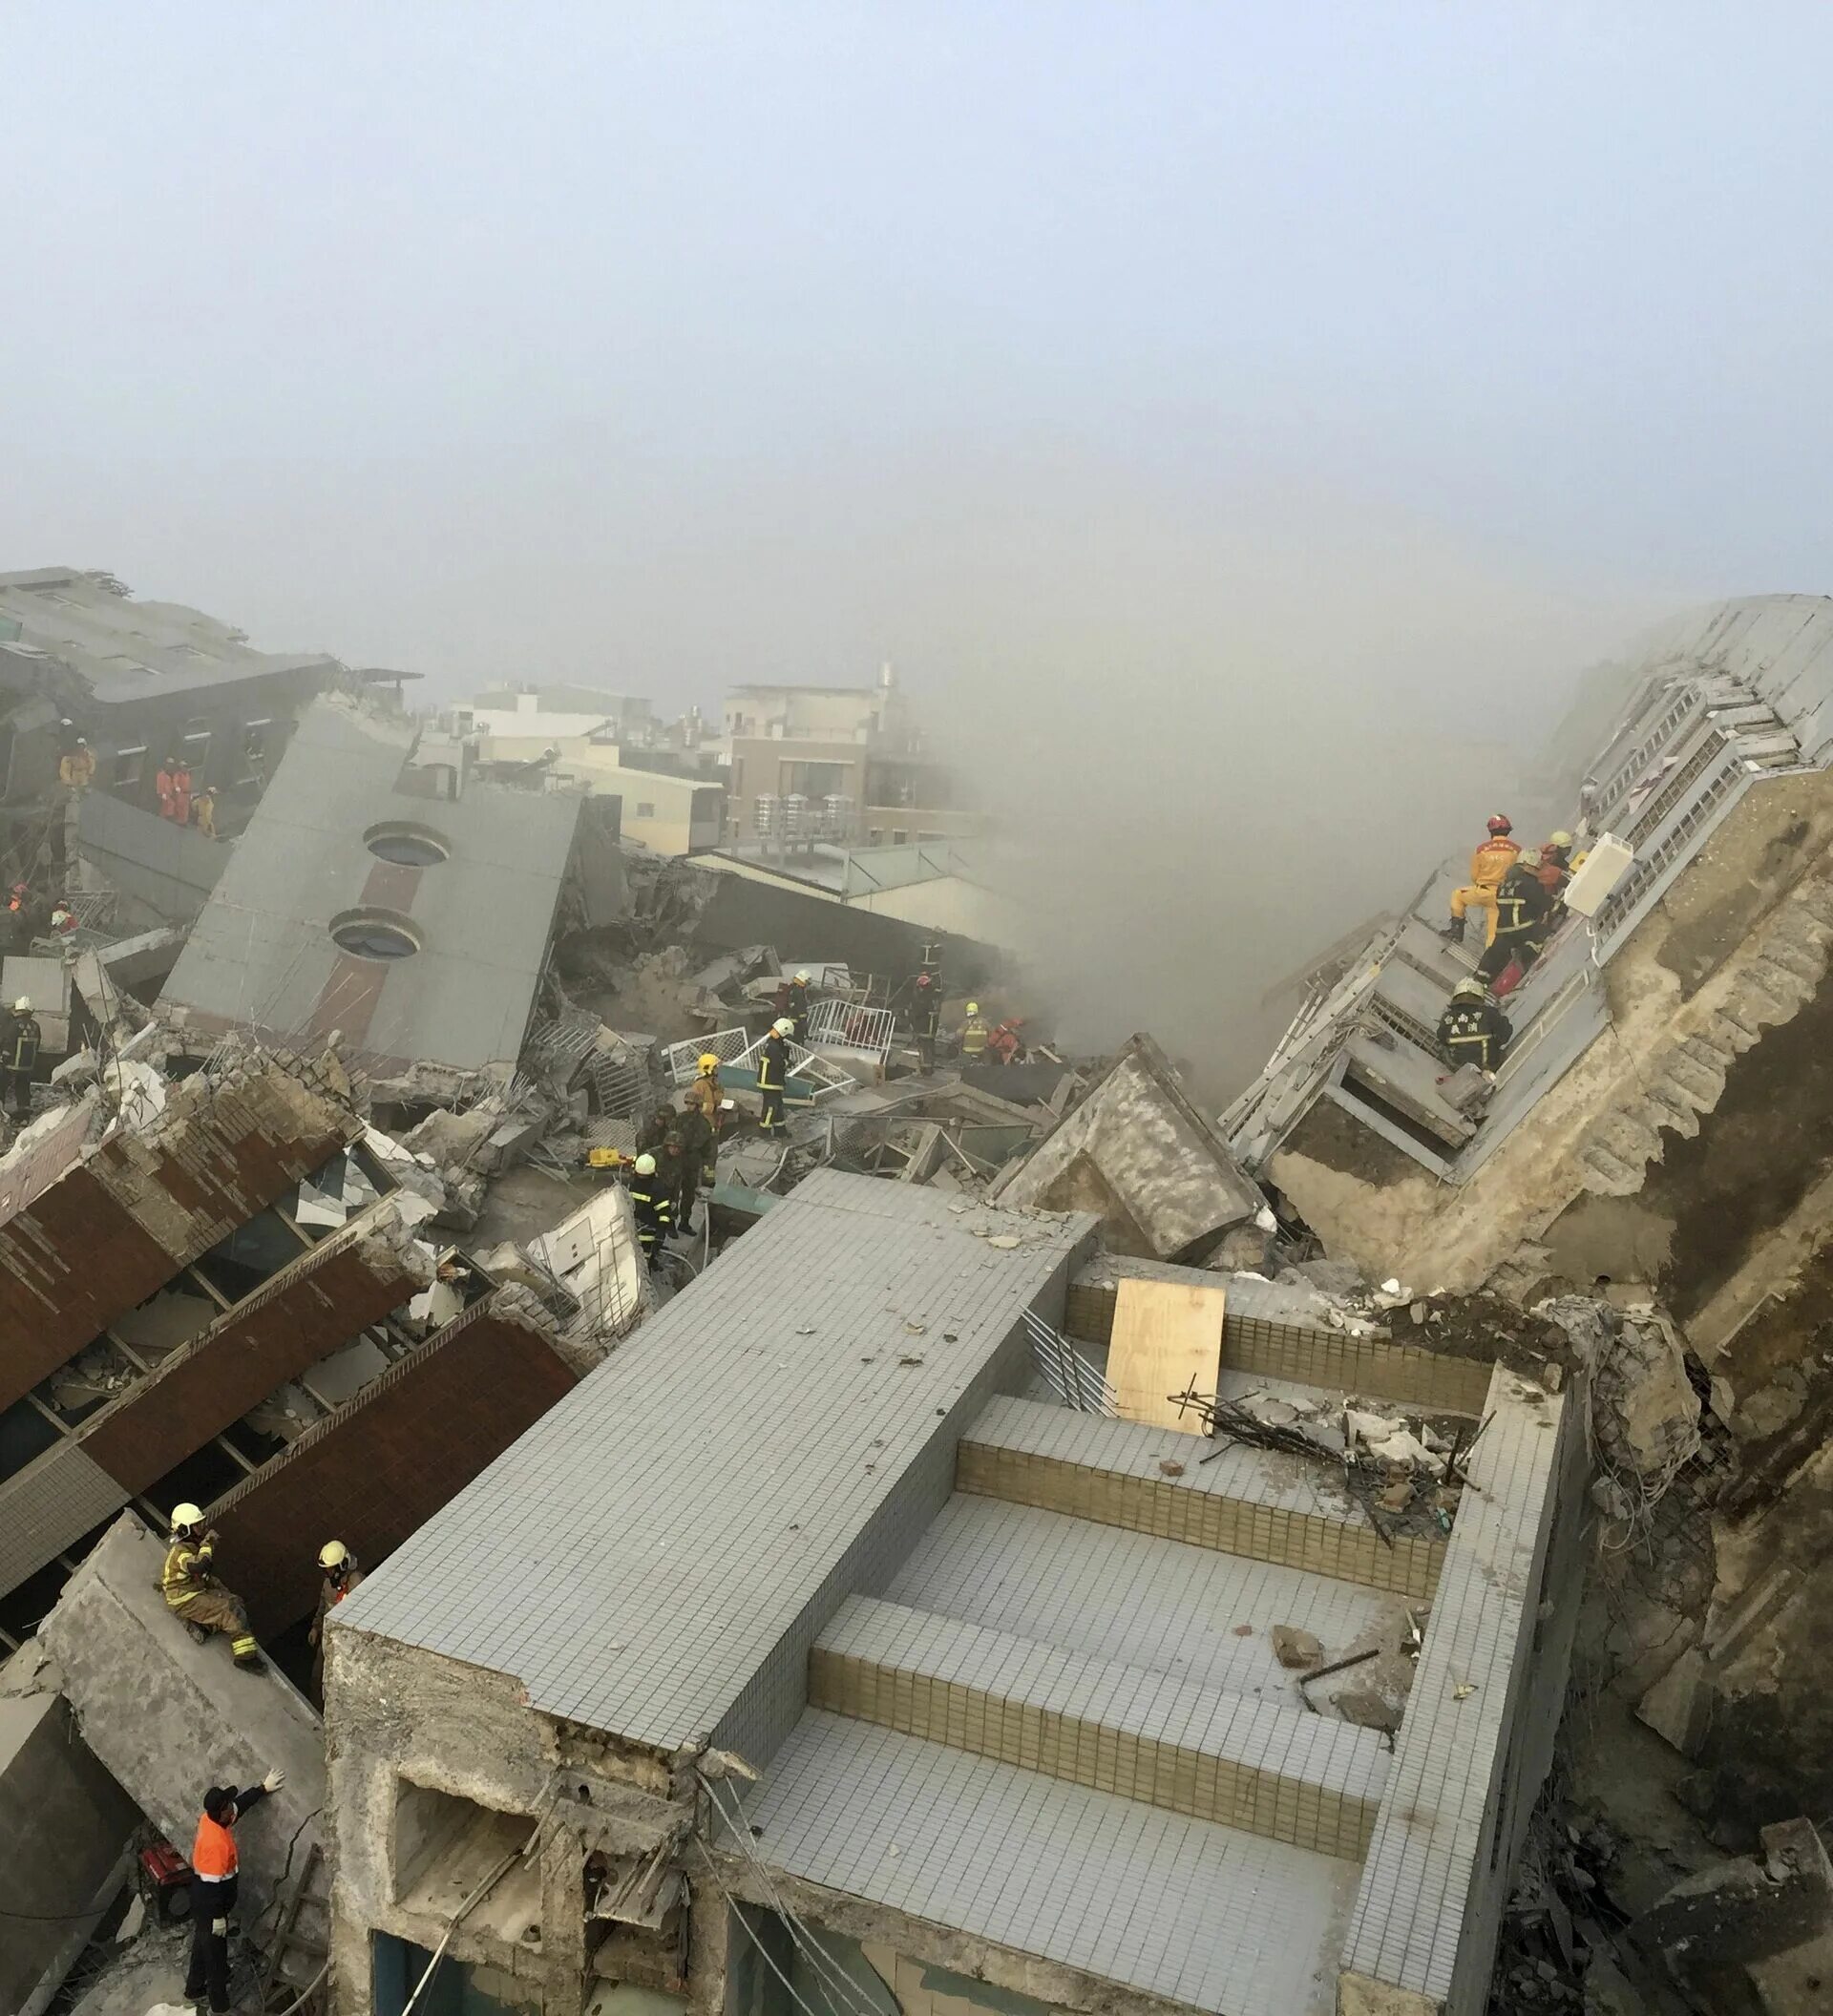 Тайвань землетрясение 2018. Землетрясение на Тайване 1999. Землетрясение разрушения. Здания после землетрясения. В сильно разрушенных зданиях поражение получают